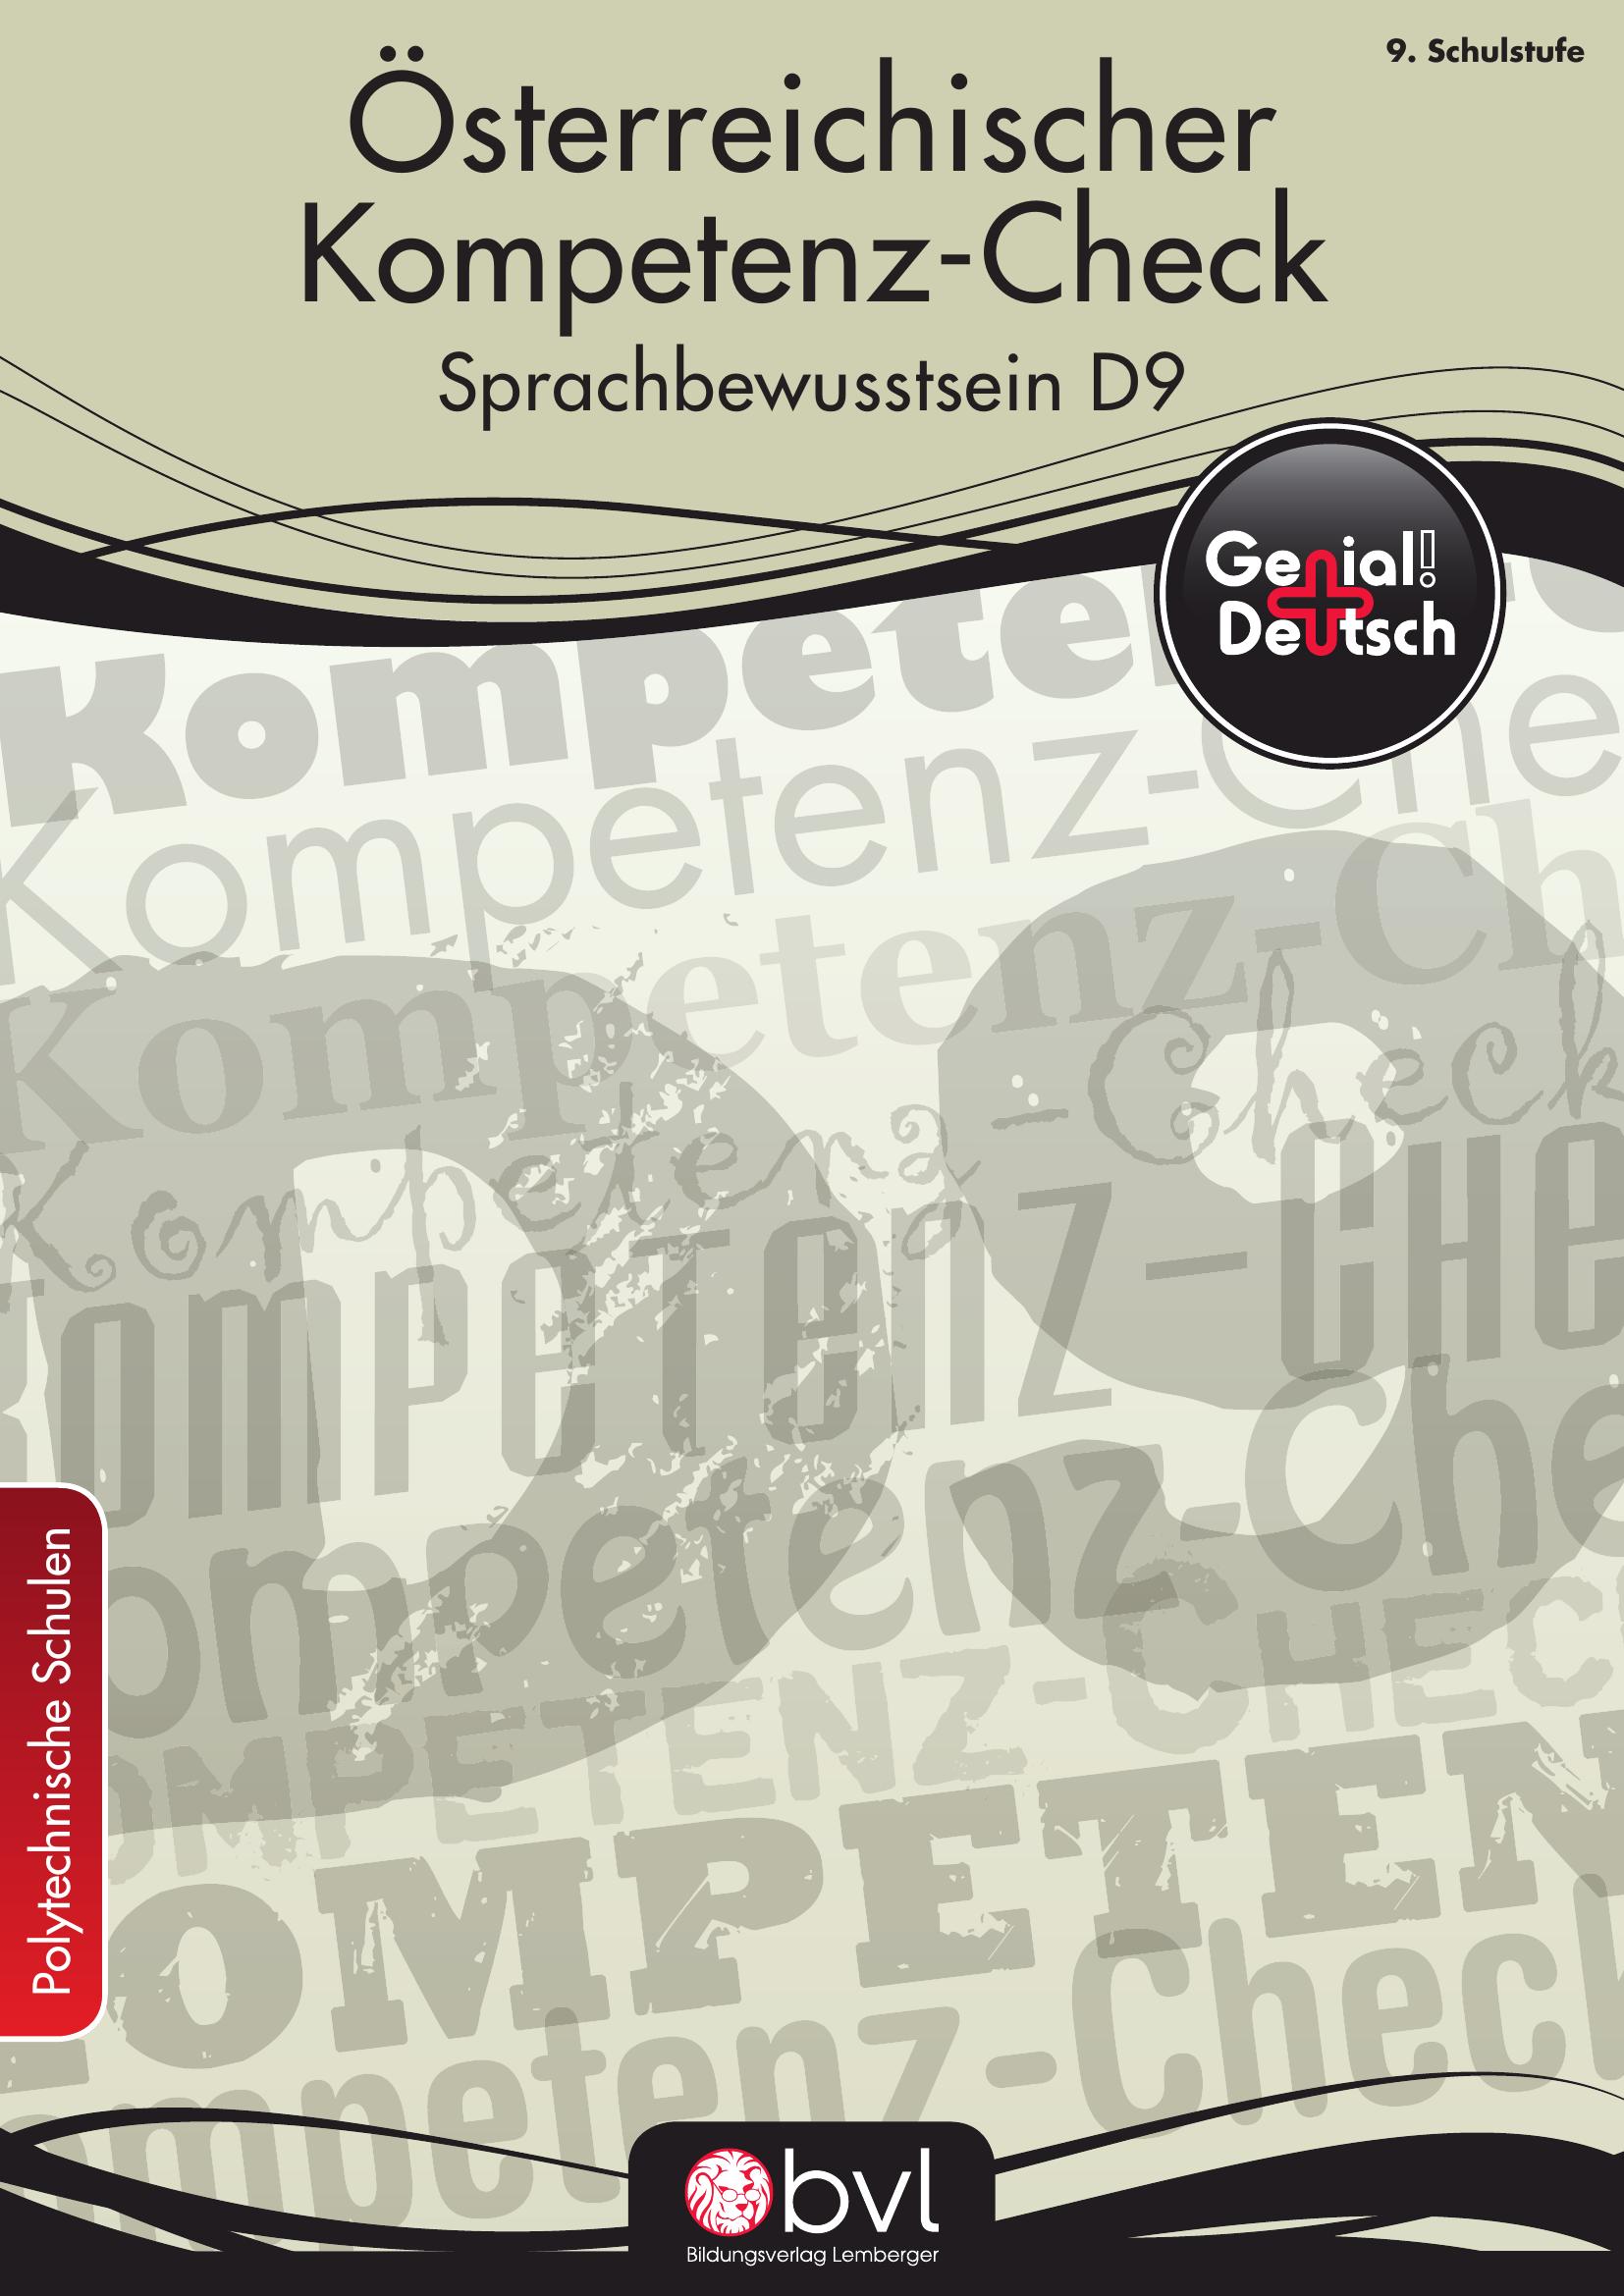 Genial! Deutsch – Evaluation: Österreichischer Kompetenz-Check Sprachbewusstsein D9, PTS